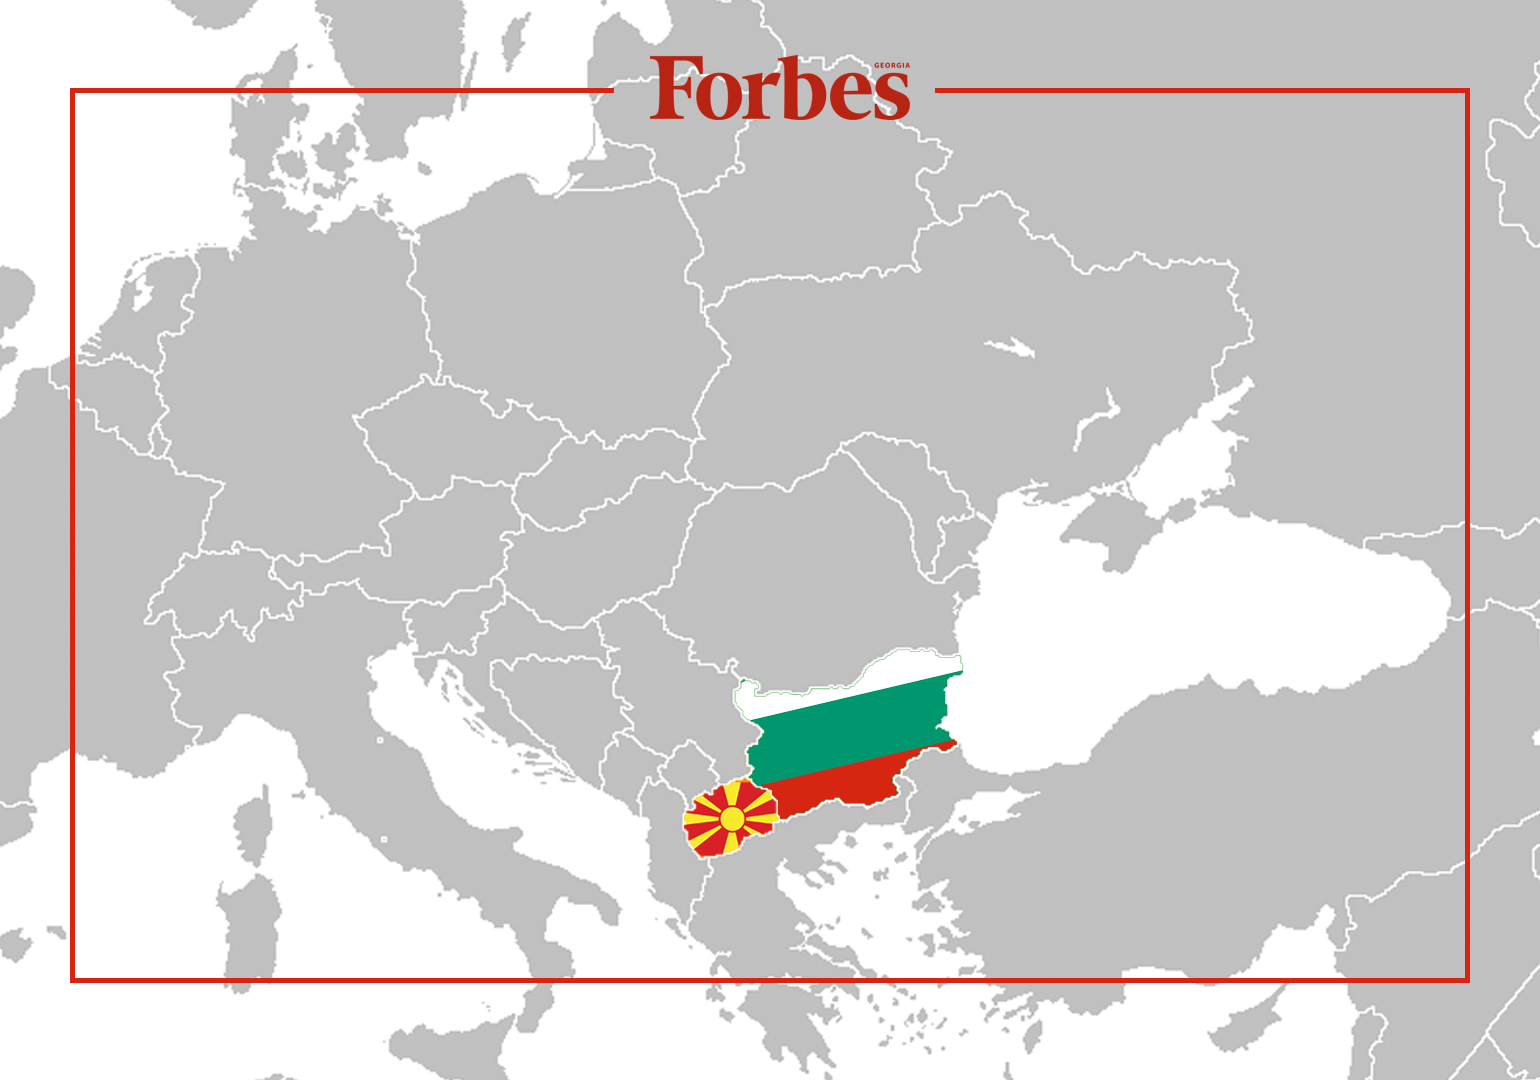 ჩრდილოეთ მაკედონიის იდენტობა – უთანხმოება სოფიასა და სკოპიეს შორის 